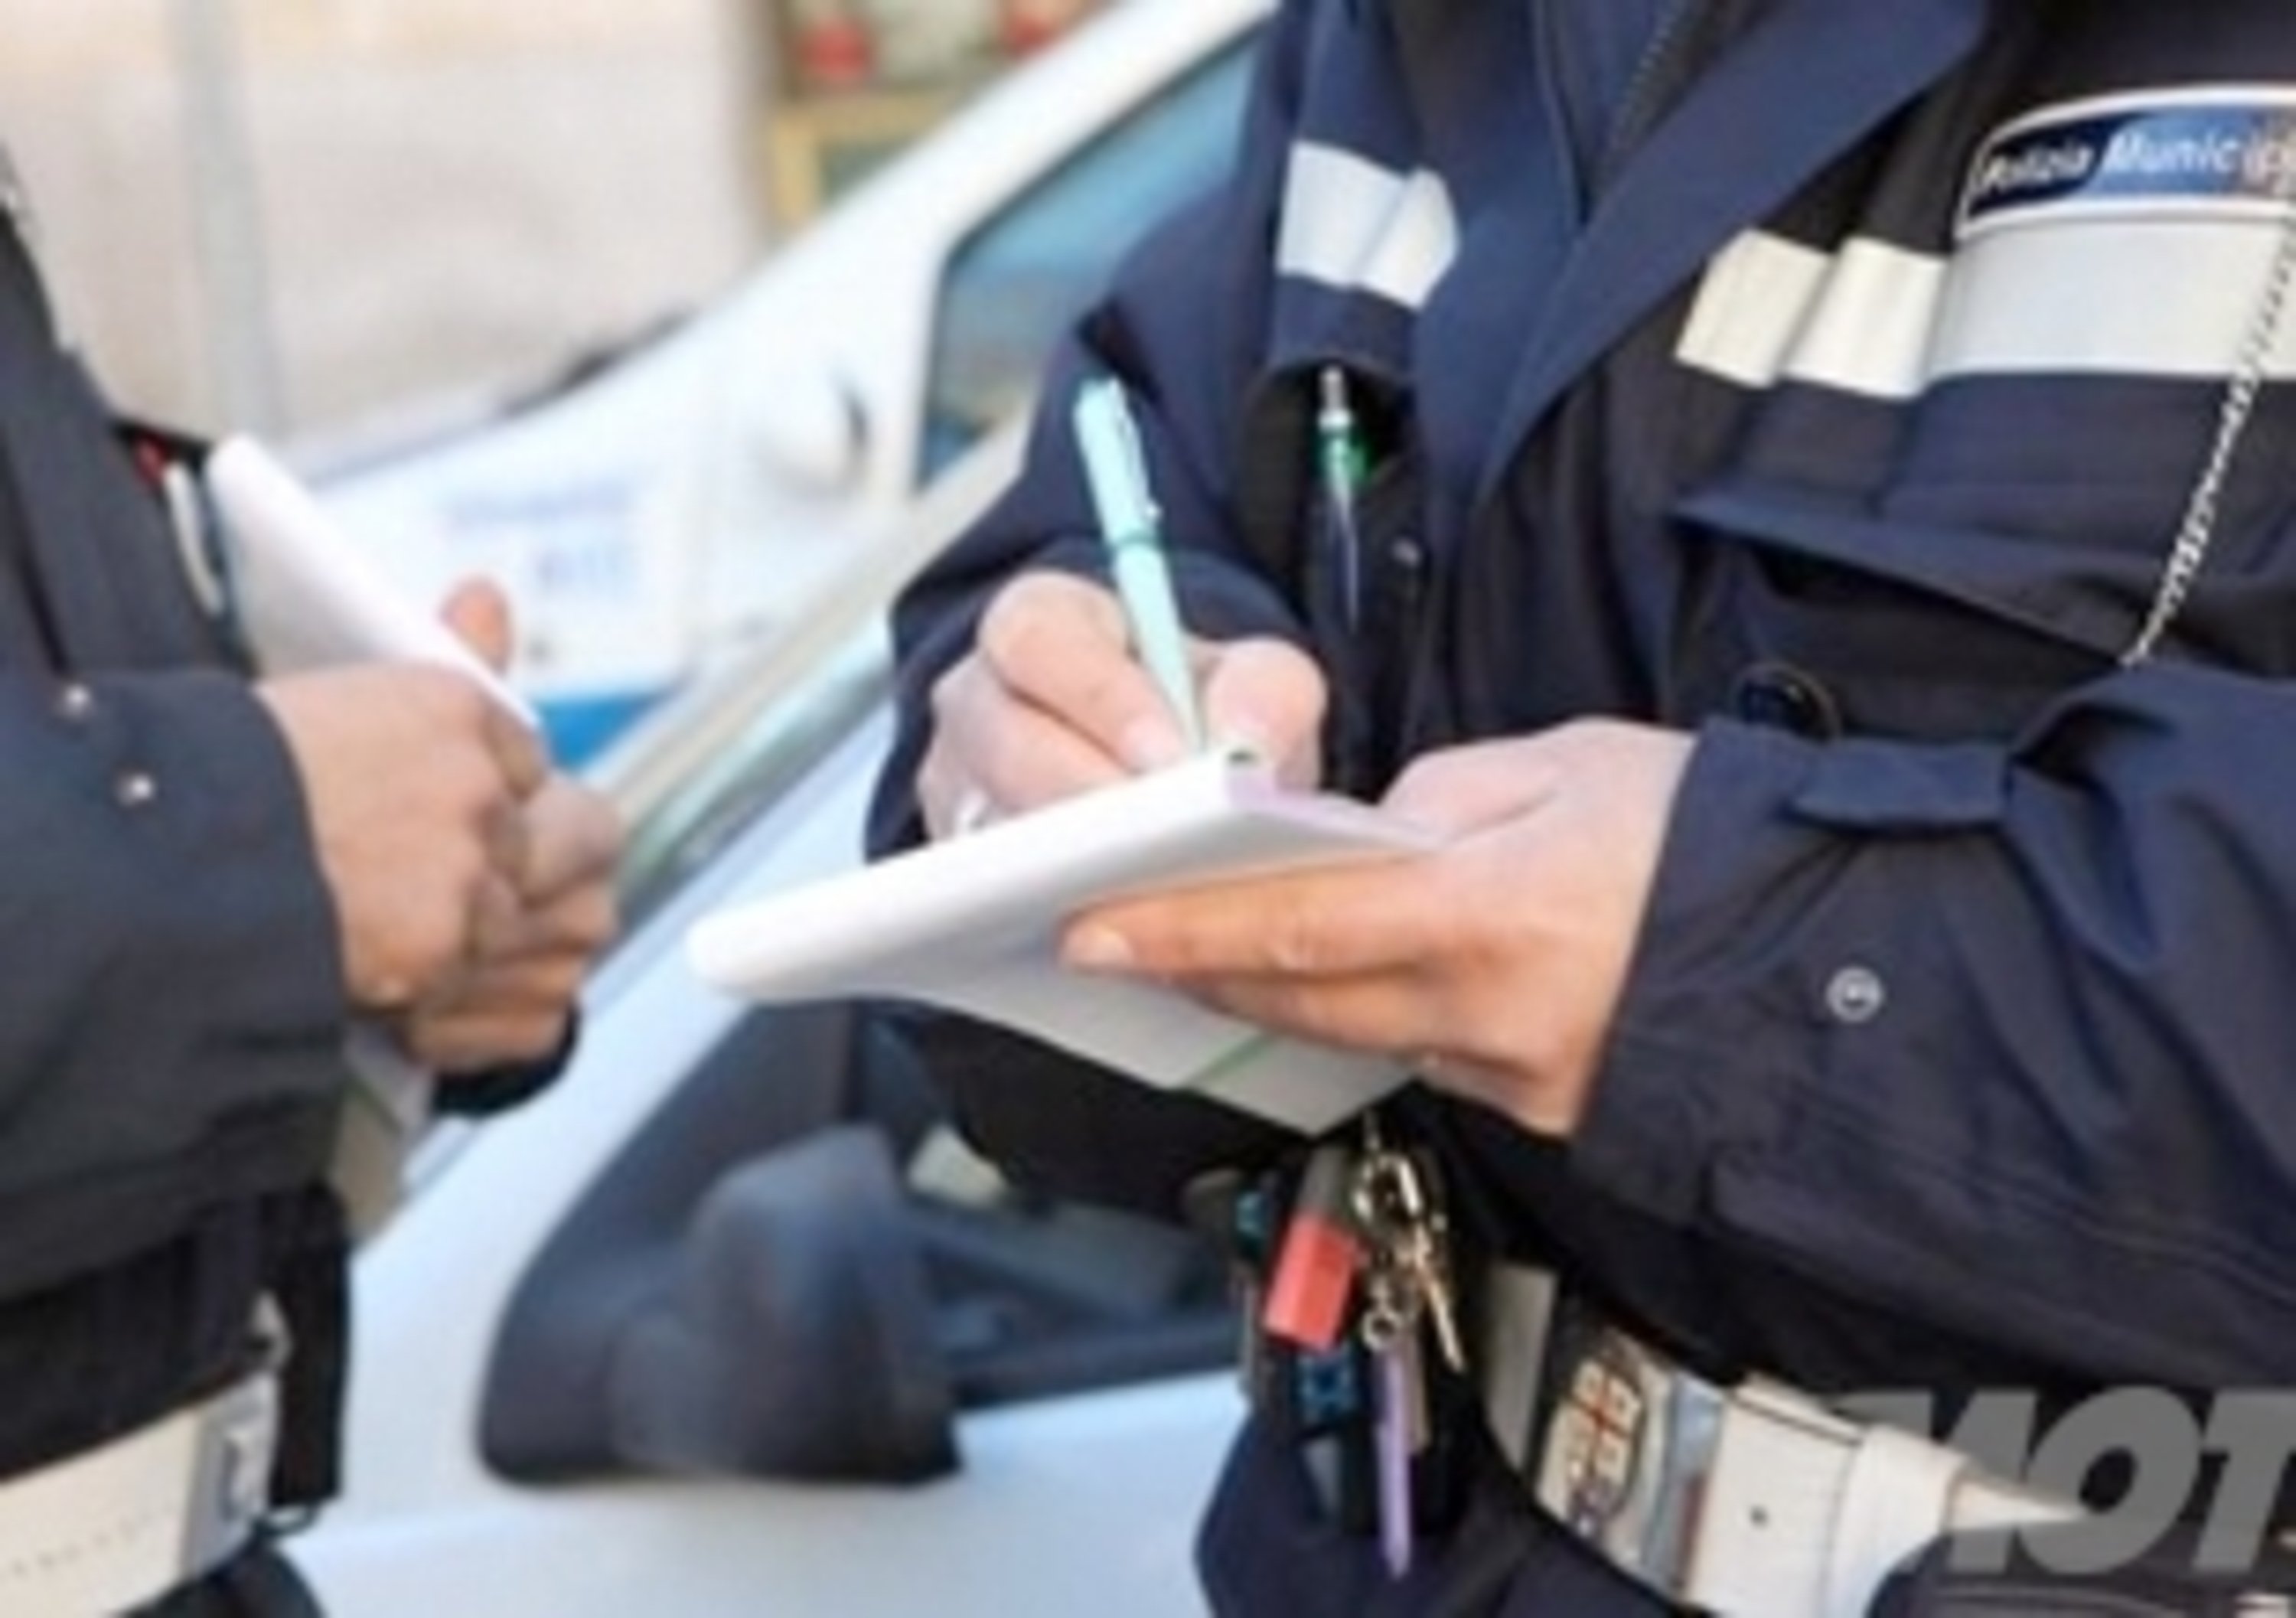 Multe ai poliziotti: il chiarimento del Comandante dei Vigili Urbani di Genova, Gianluca Giurato